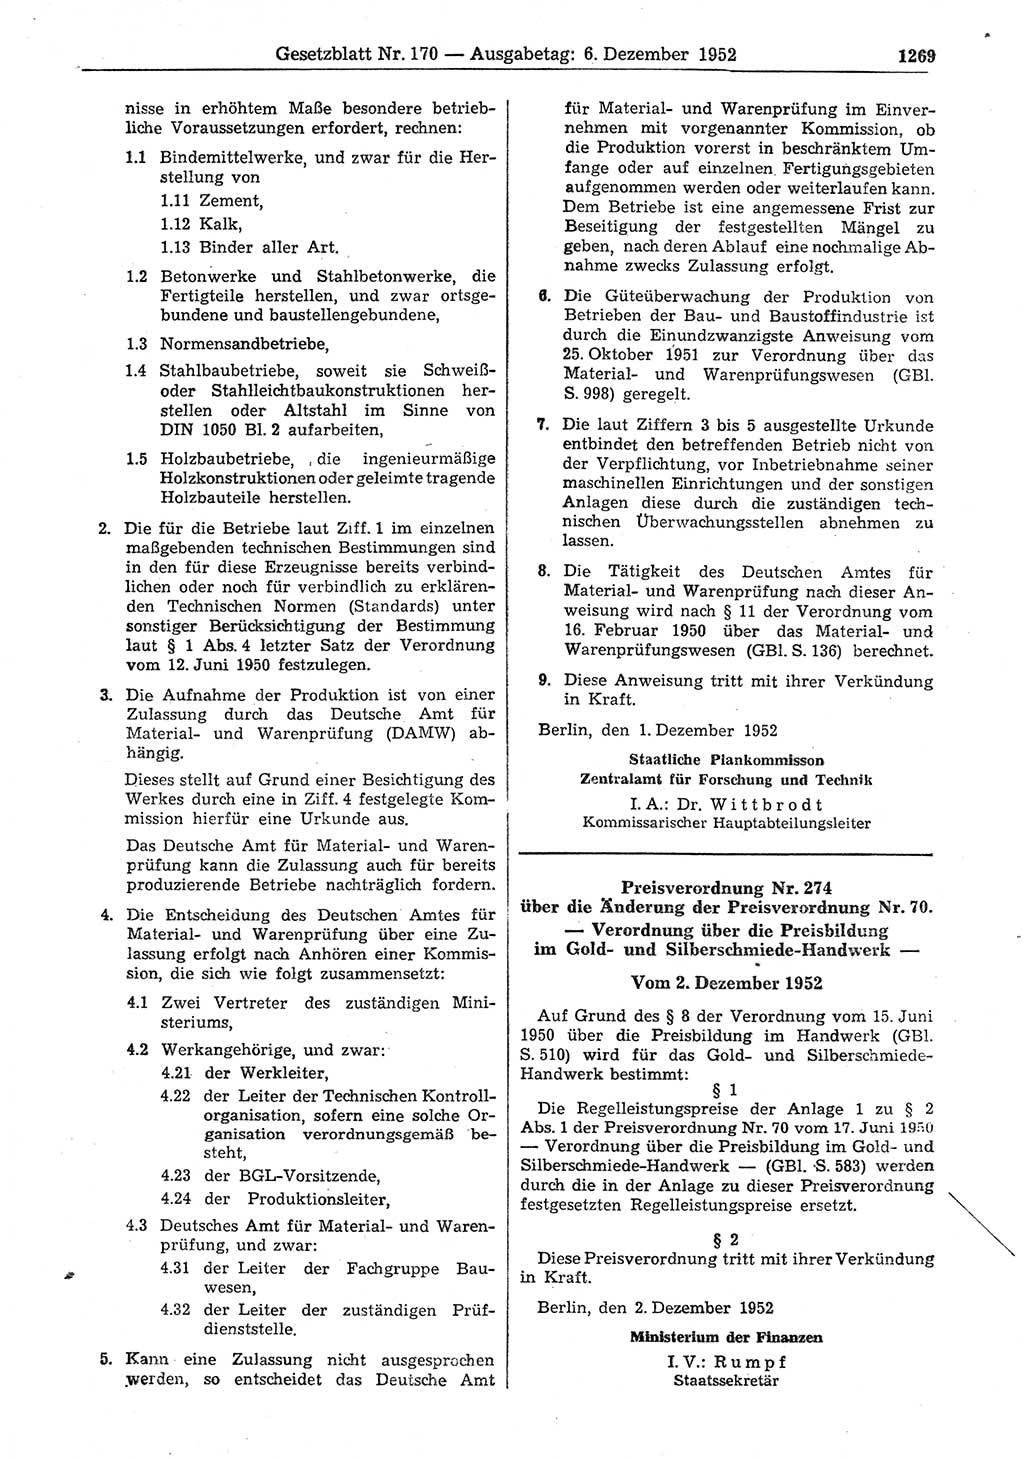 Gesetzblatt (GBl.) der Deutschen Demokratischen Republik (DDR) 1952, Seite 1269 (GBl. DDR 1952, S. 1269)